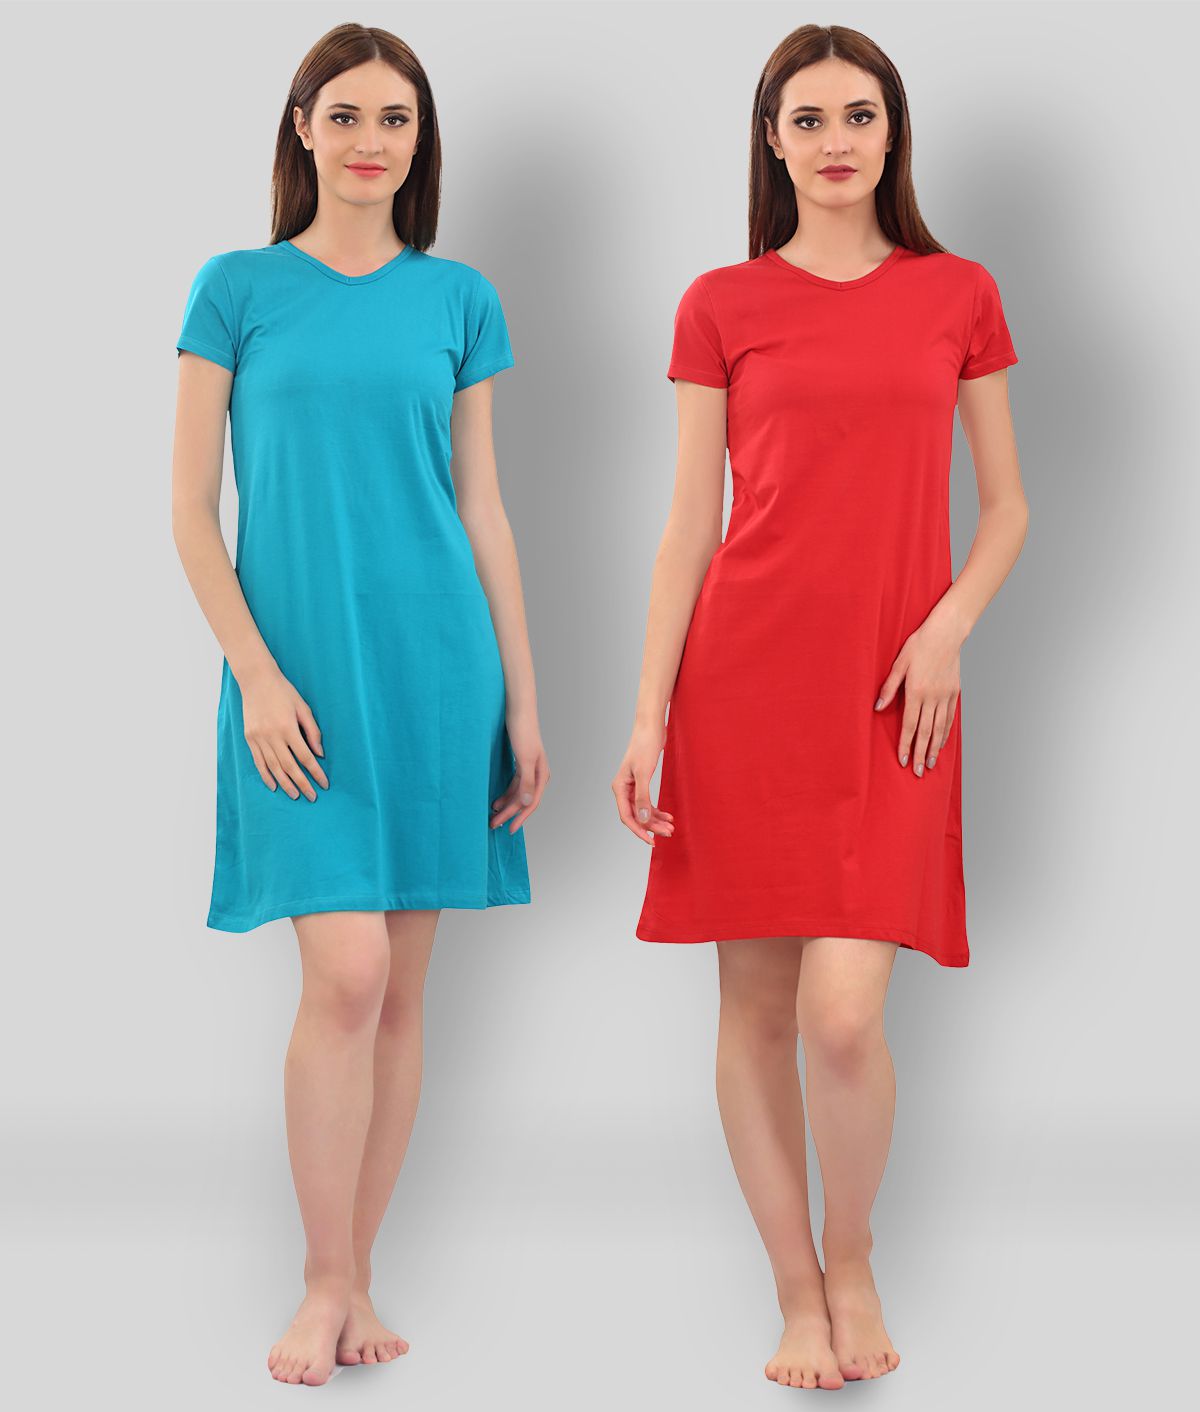     			Zebu - Multicolor Cotton Women's Nightwear Night Dress ( Pack of 2 )